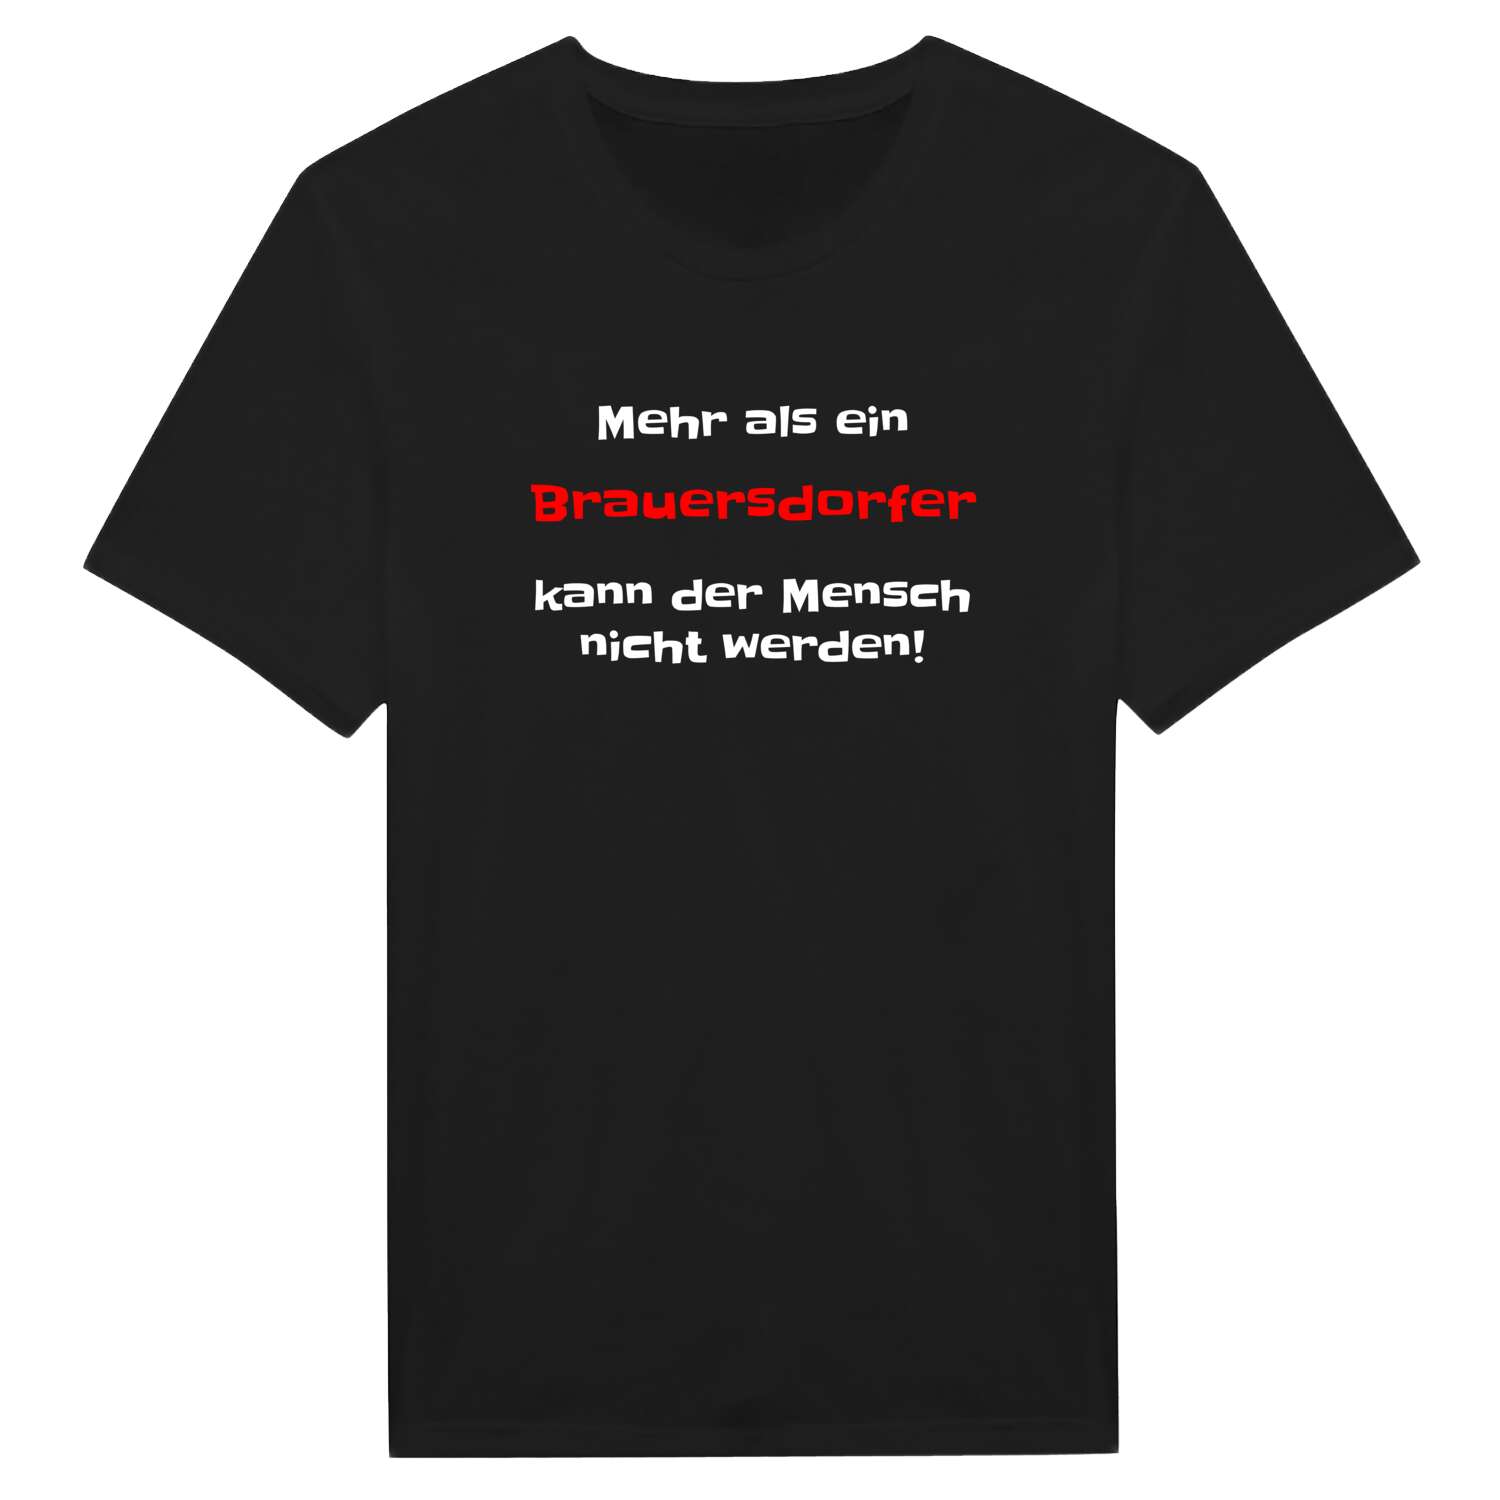 Brauersdorf T-Shirt »Mehr als ein«